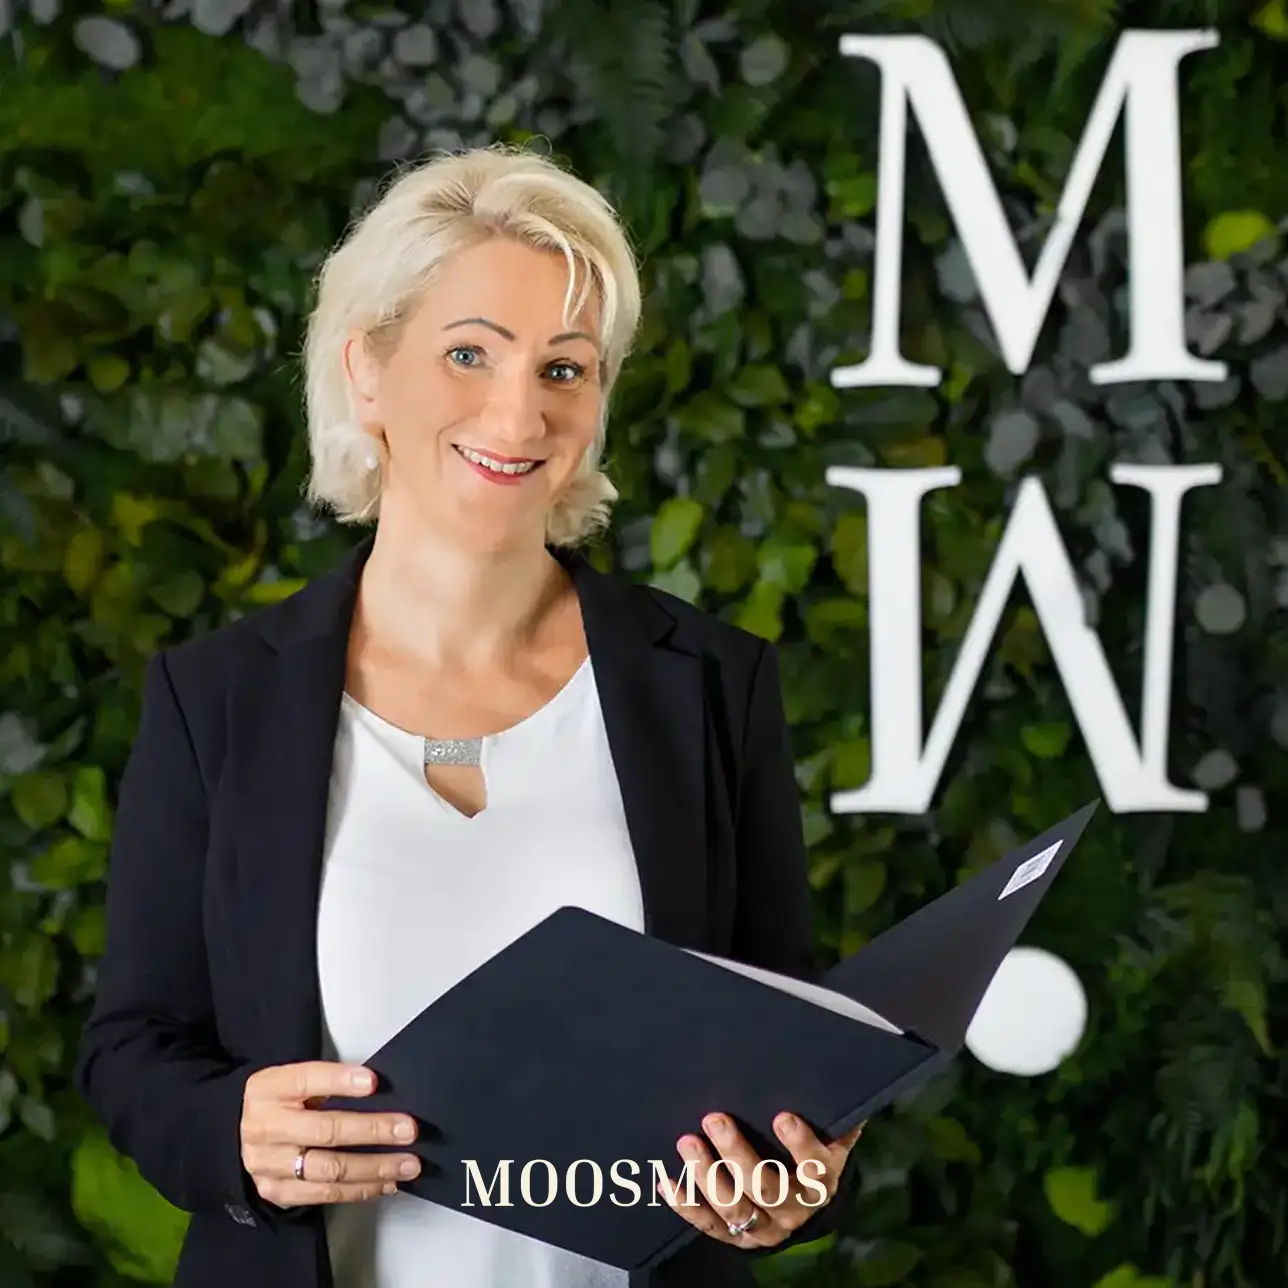 MOOSMOOS Vetrieb & Kundendienst für persönliche Beratung kunden für Mooswände, Moosdecken & Moosbilder & Außenfassadenbegrünung Anja Poost